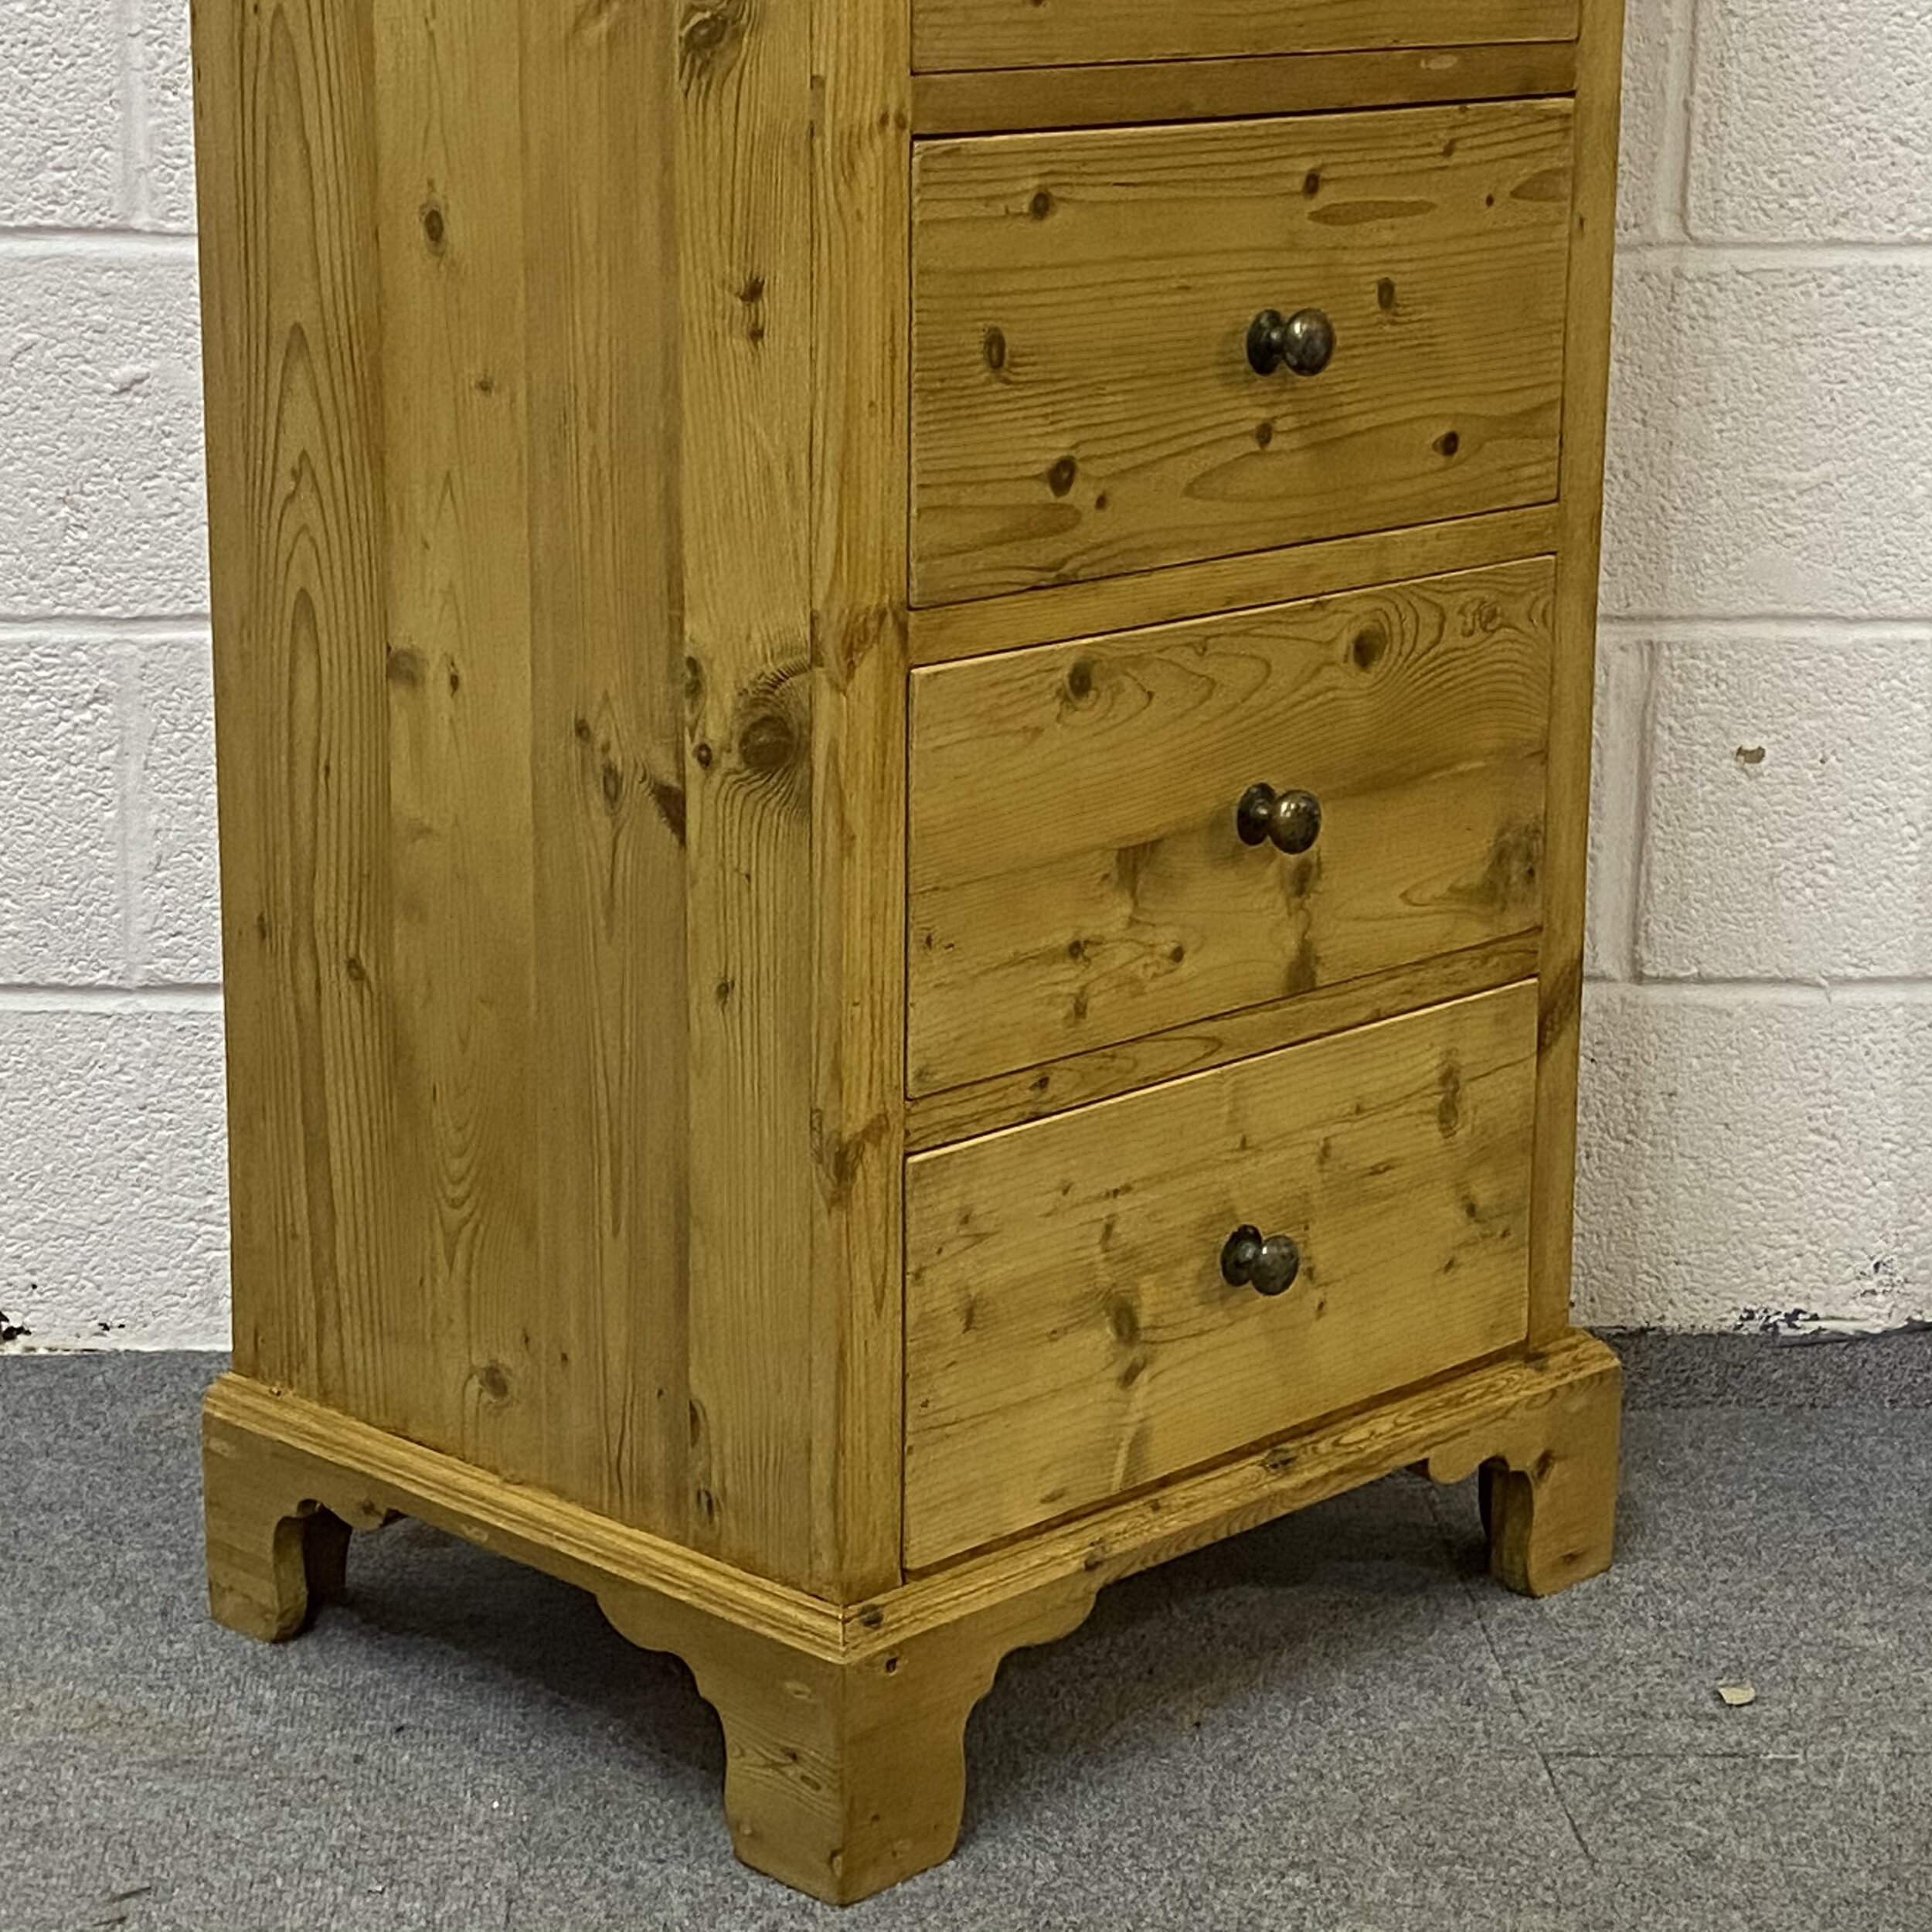 Tall slim handmade pine chest of drawers